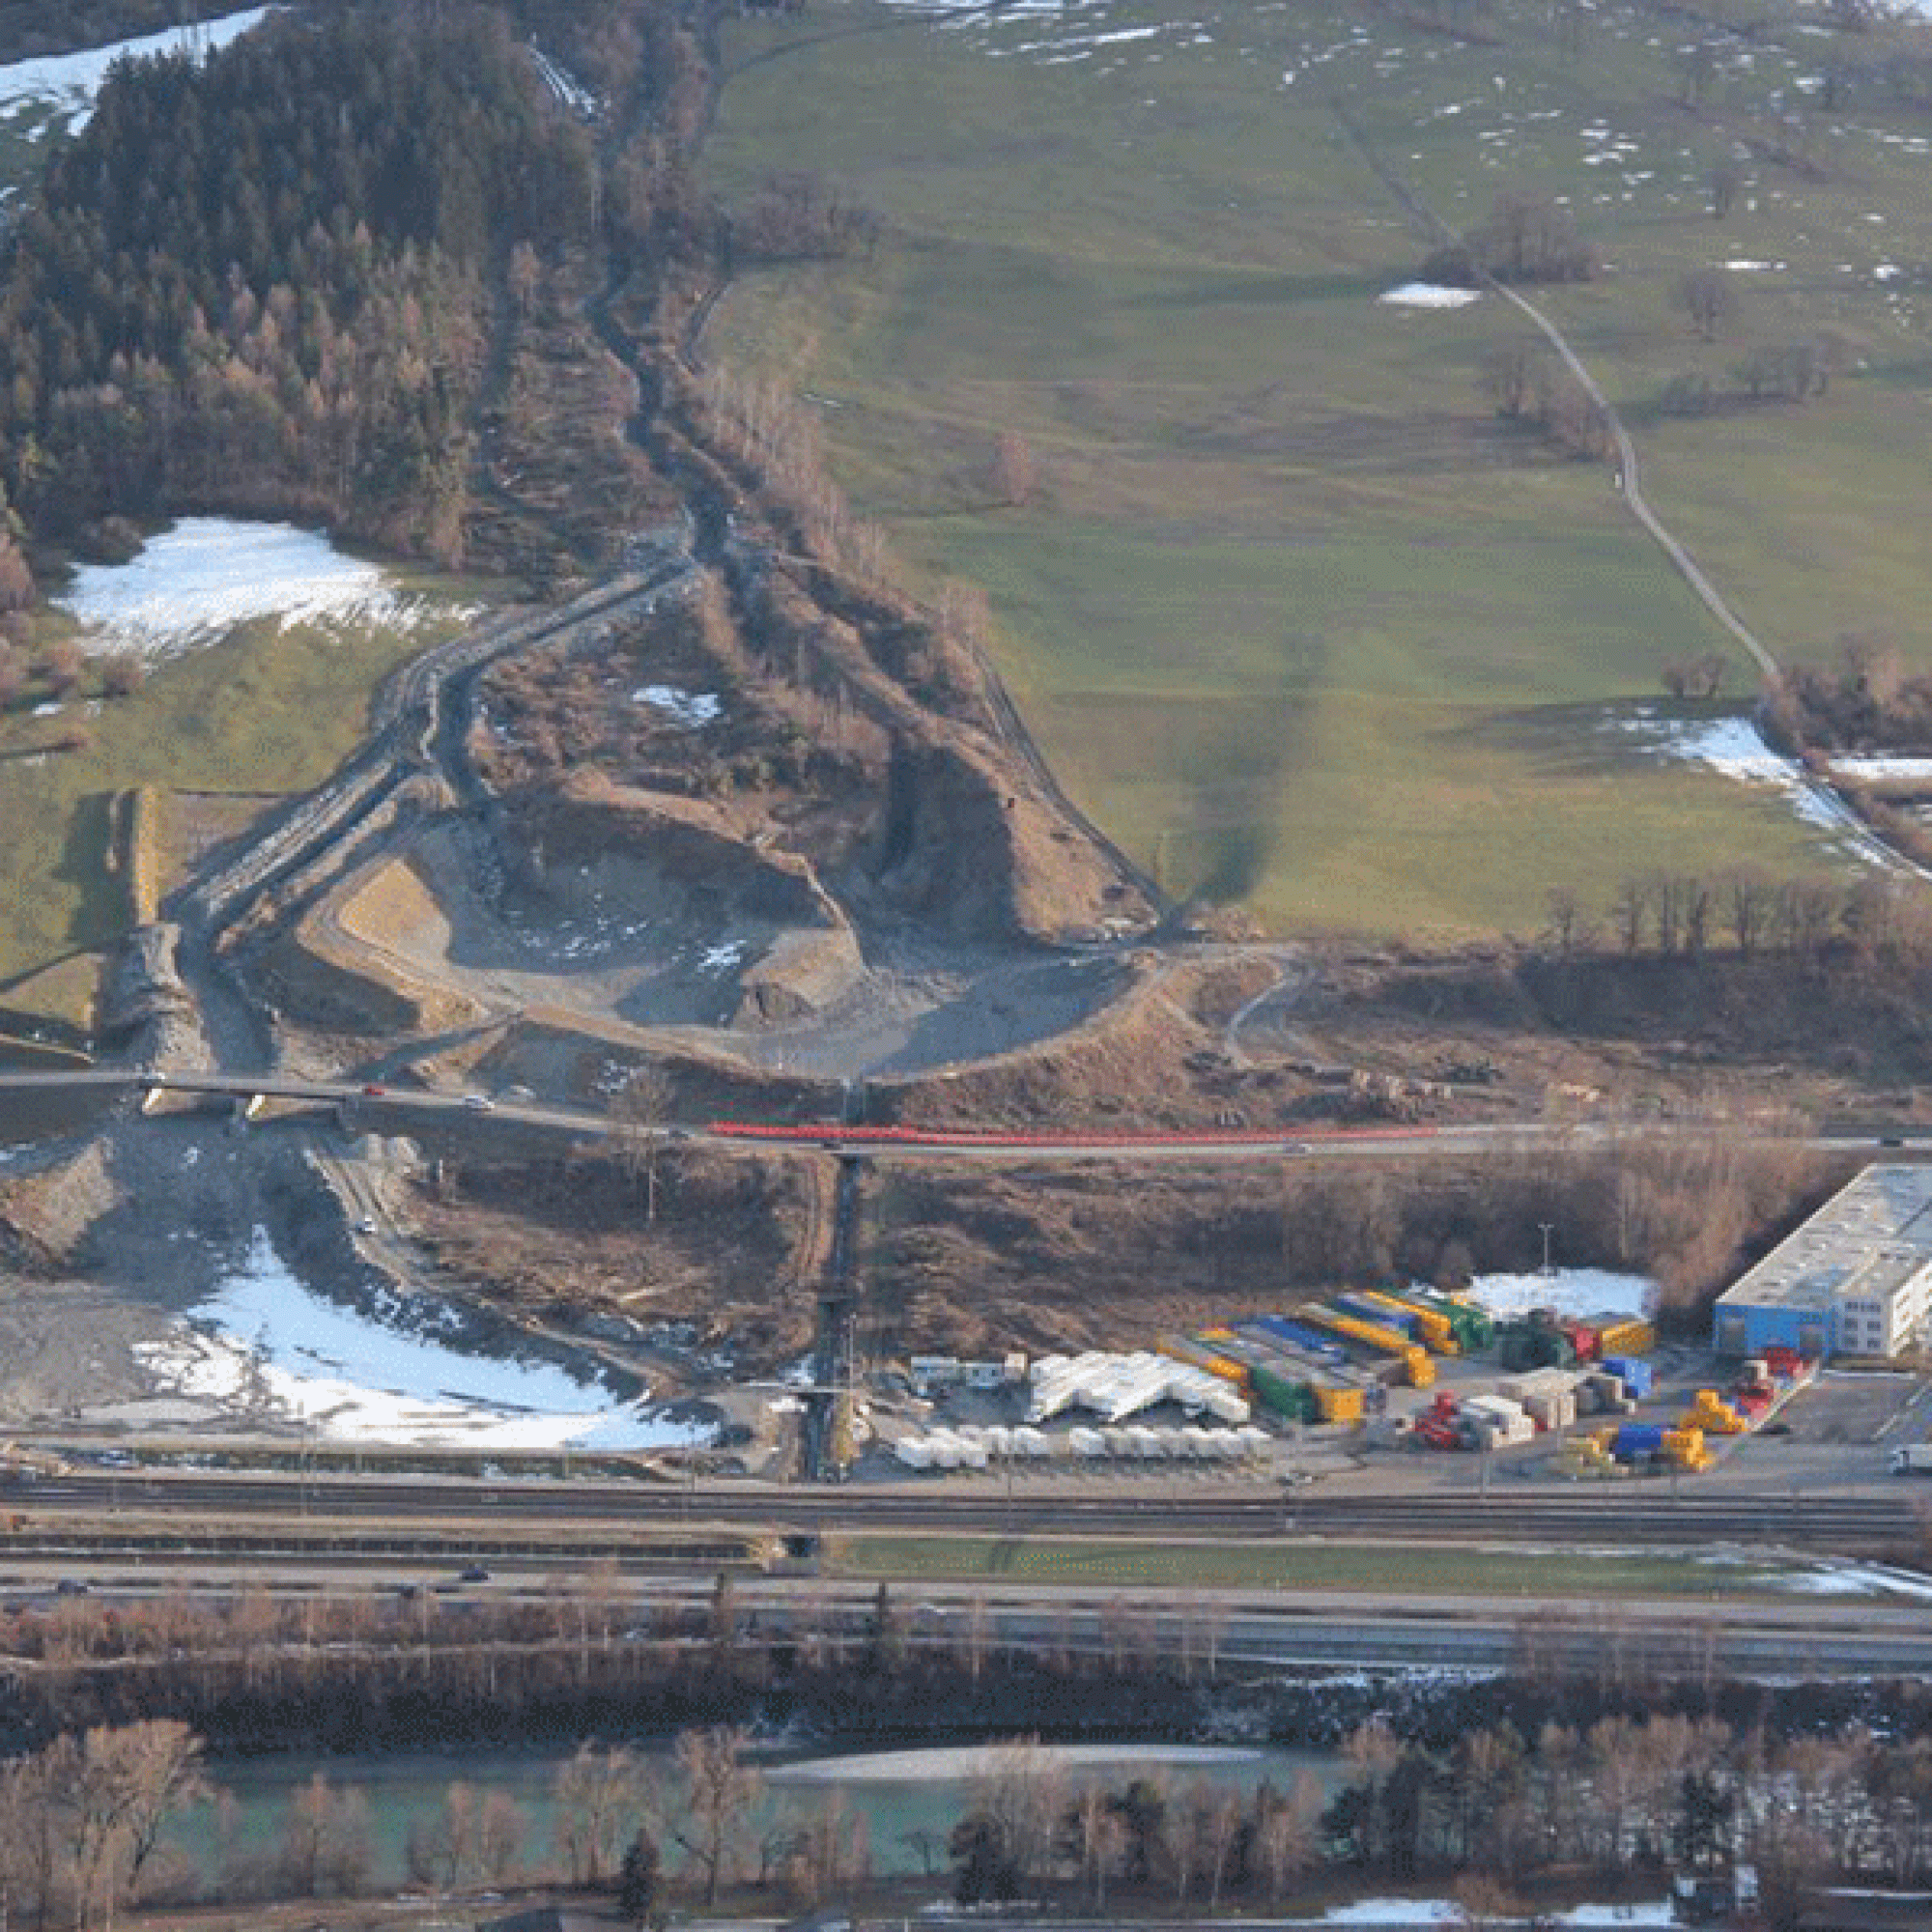 Die bestehenden Schutzbauten unterhalb der Val Parghera werden bis 2019 massiv ausgebaut. (Luftbild: Amt für Wald und Naturgefahren GR)